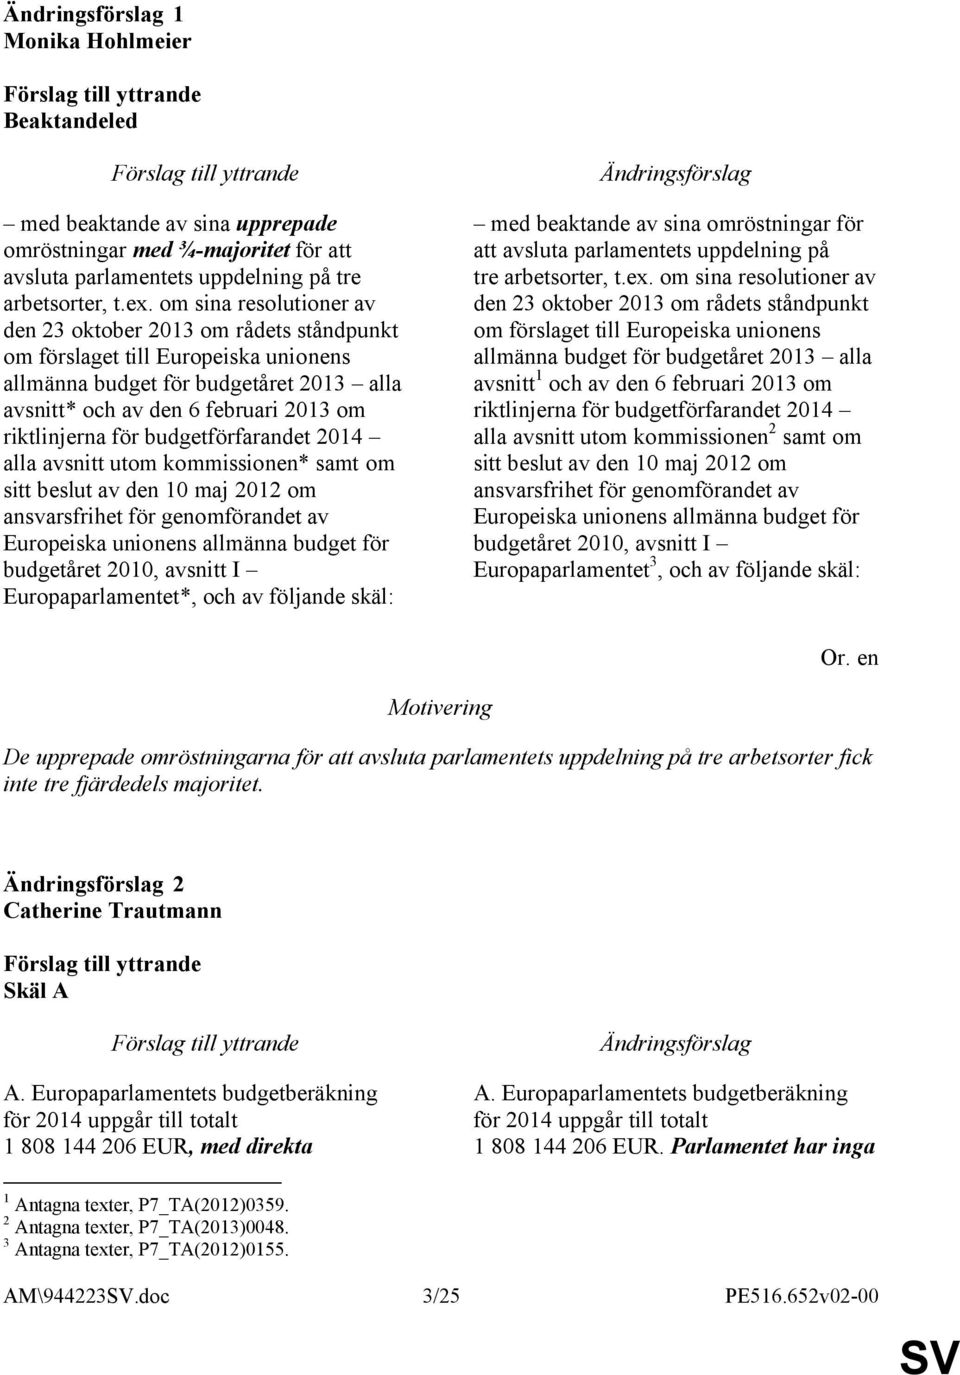 budgetförfarandet 2014 alla avsnitt utom kommissionen* samt om sitt beslut av den 10 maj 2012 om ansvarsfrihet för genomförandet av Europeiska unionens allmänna budget för budgetåret 2010, avsnitt I